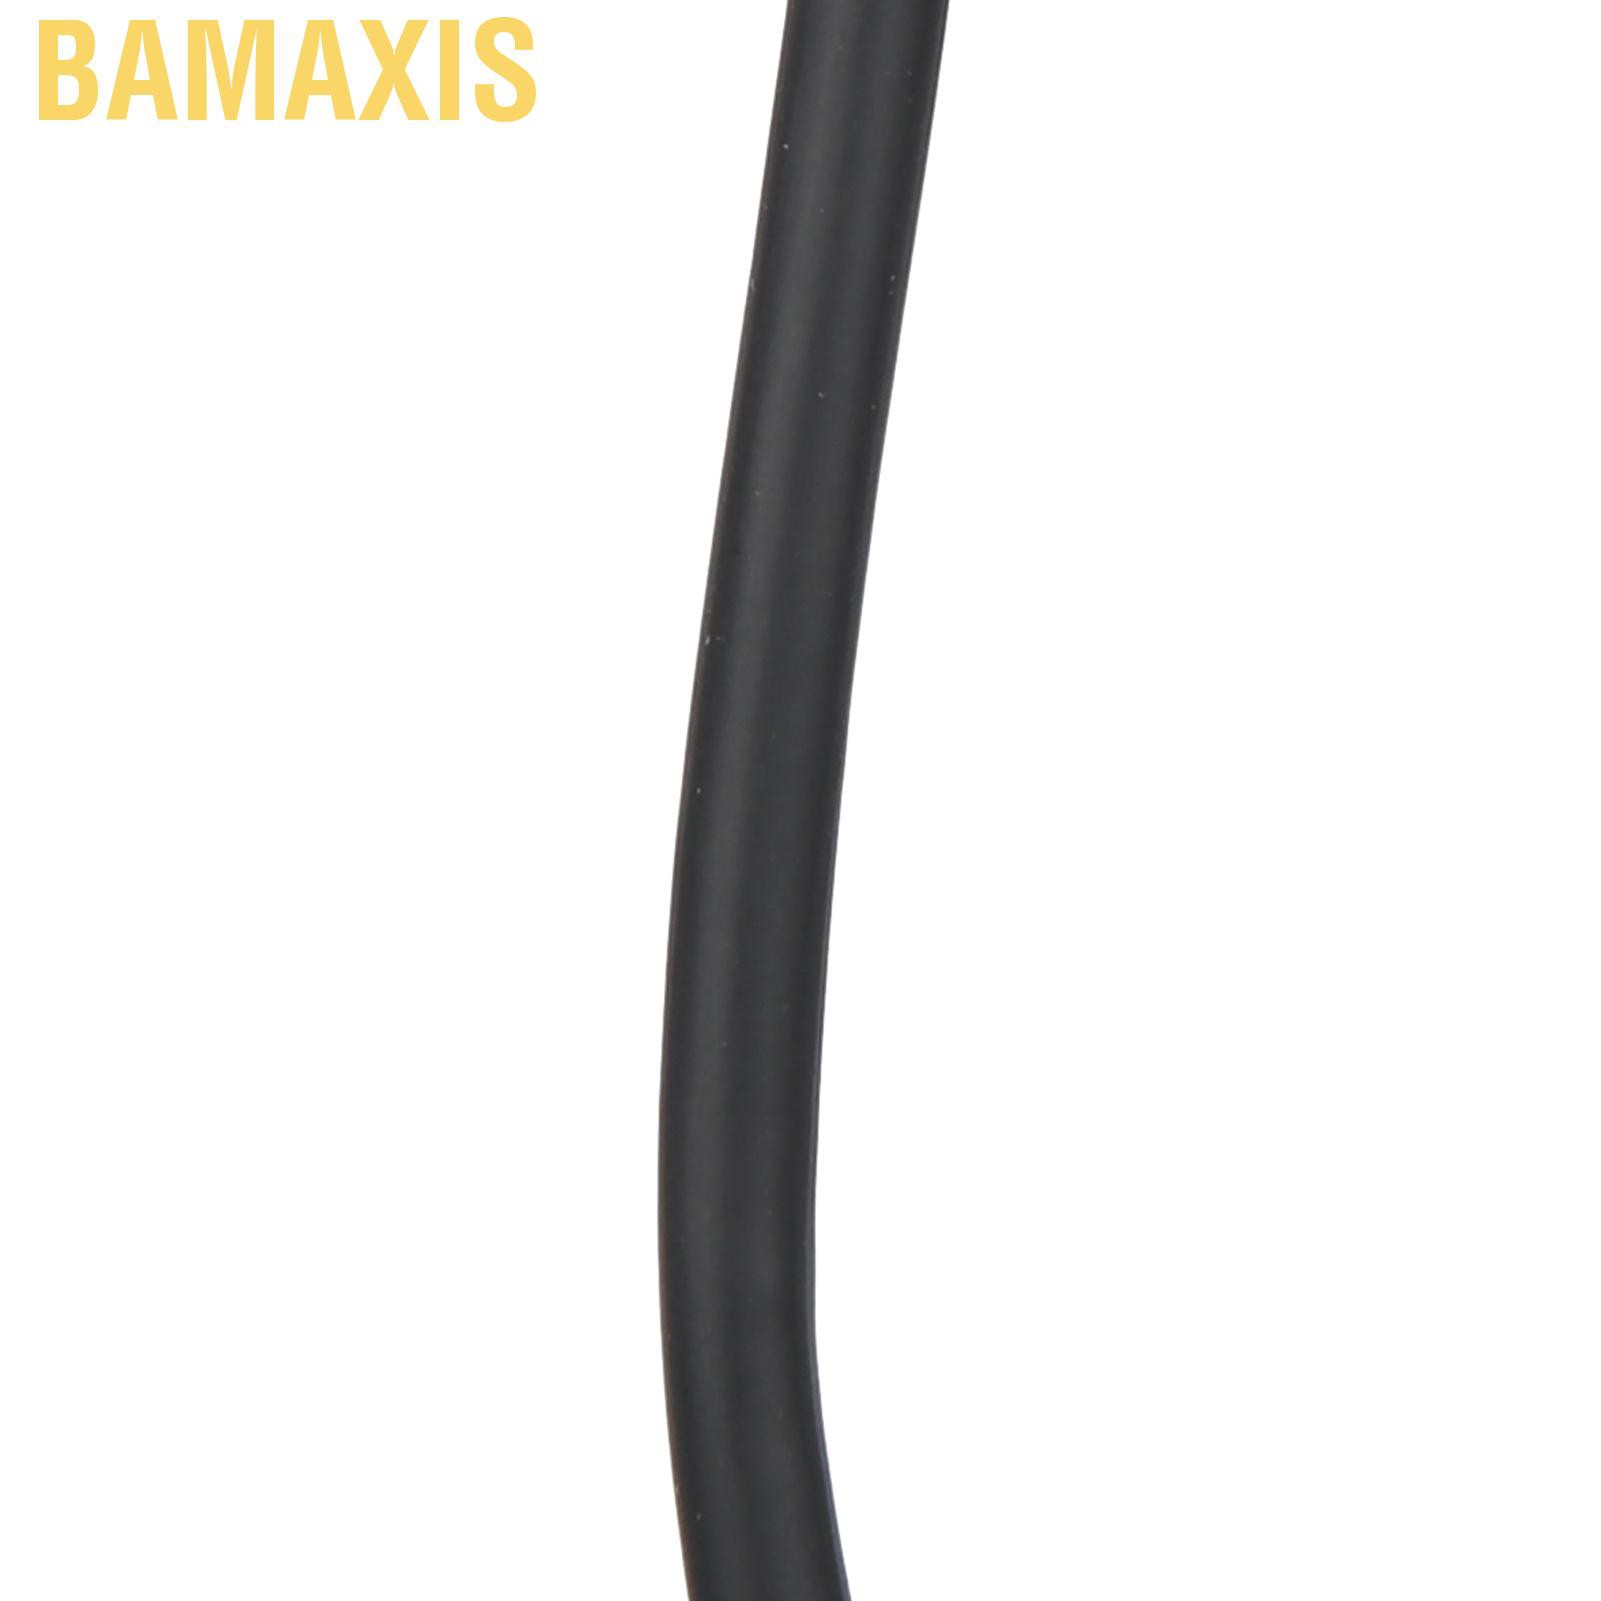 Cáp Chuyển Đổi Bamaxis 15cm Type-C Sang 2 Điều Khiển Từ Xa Cho Android Phone Tablet